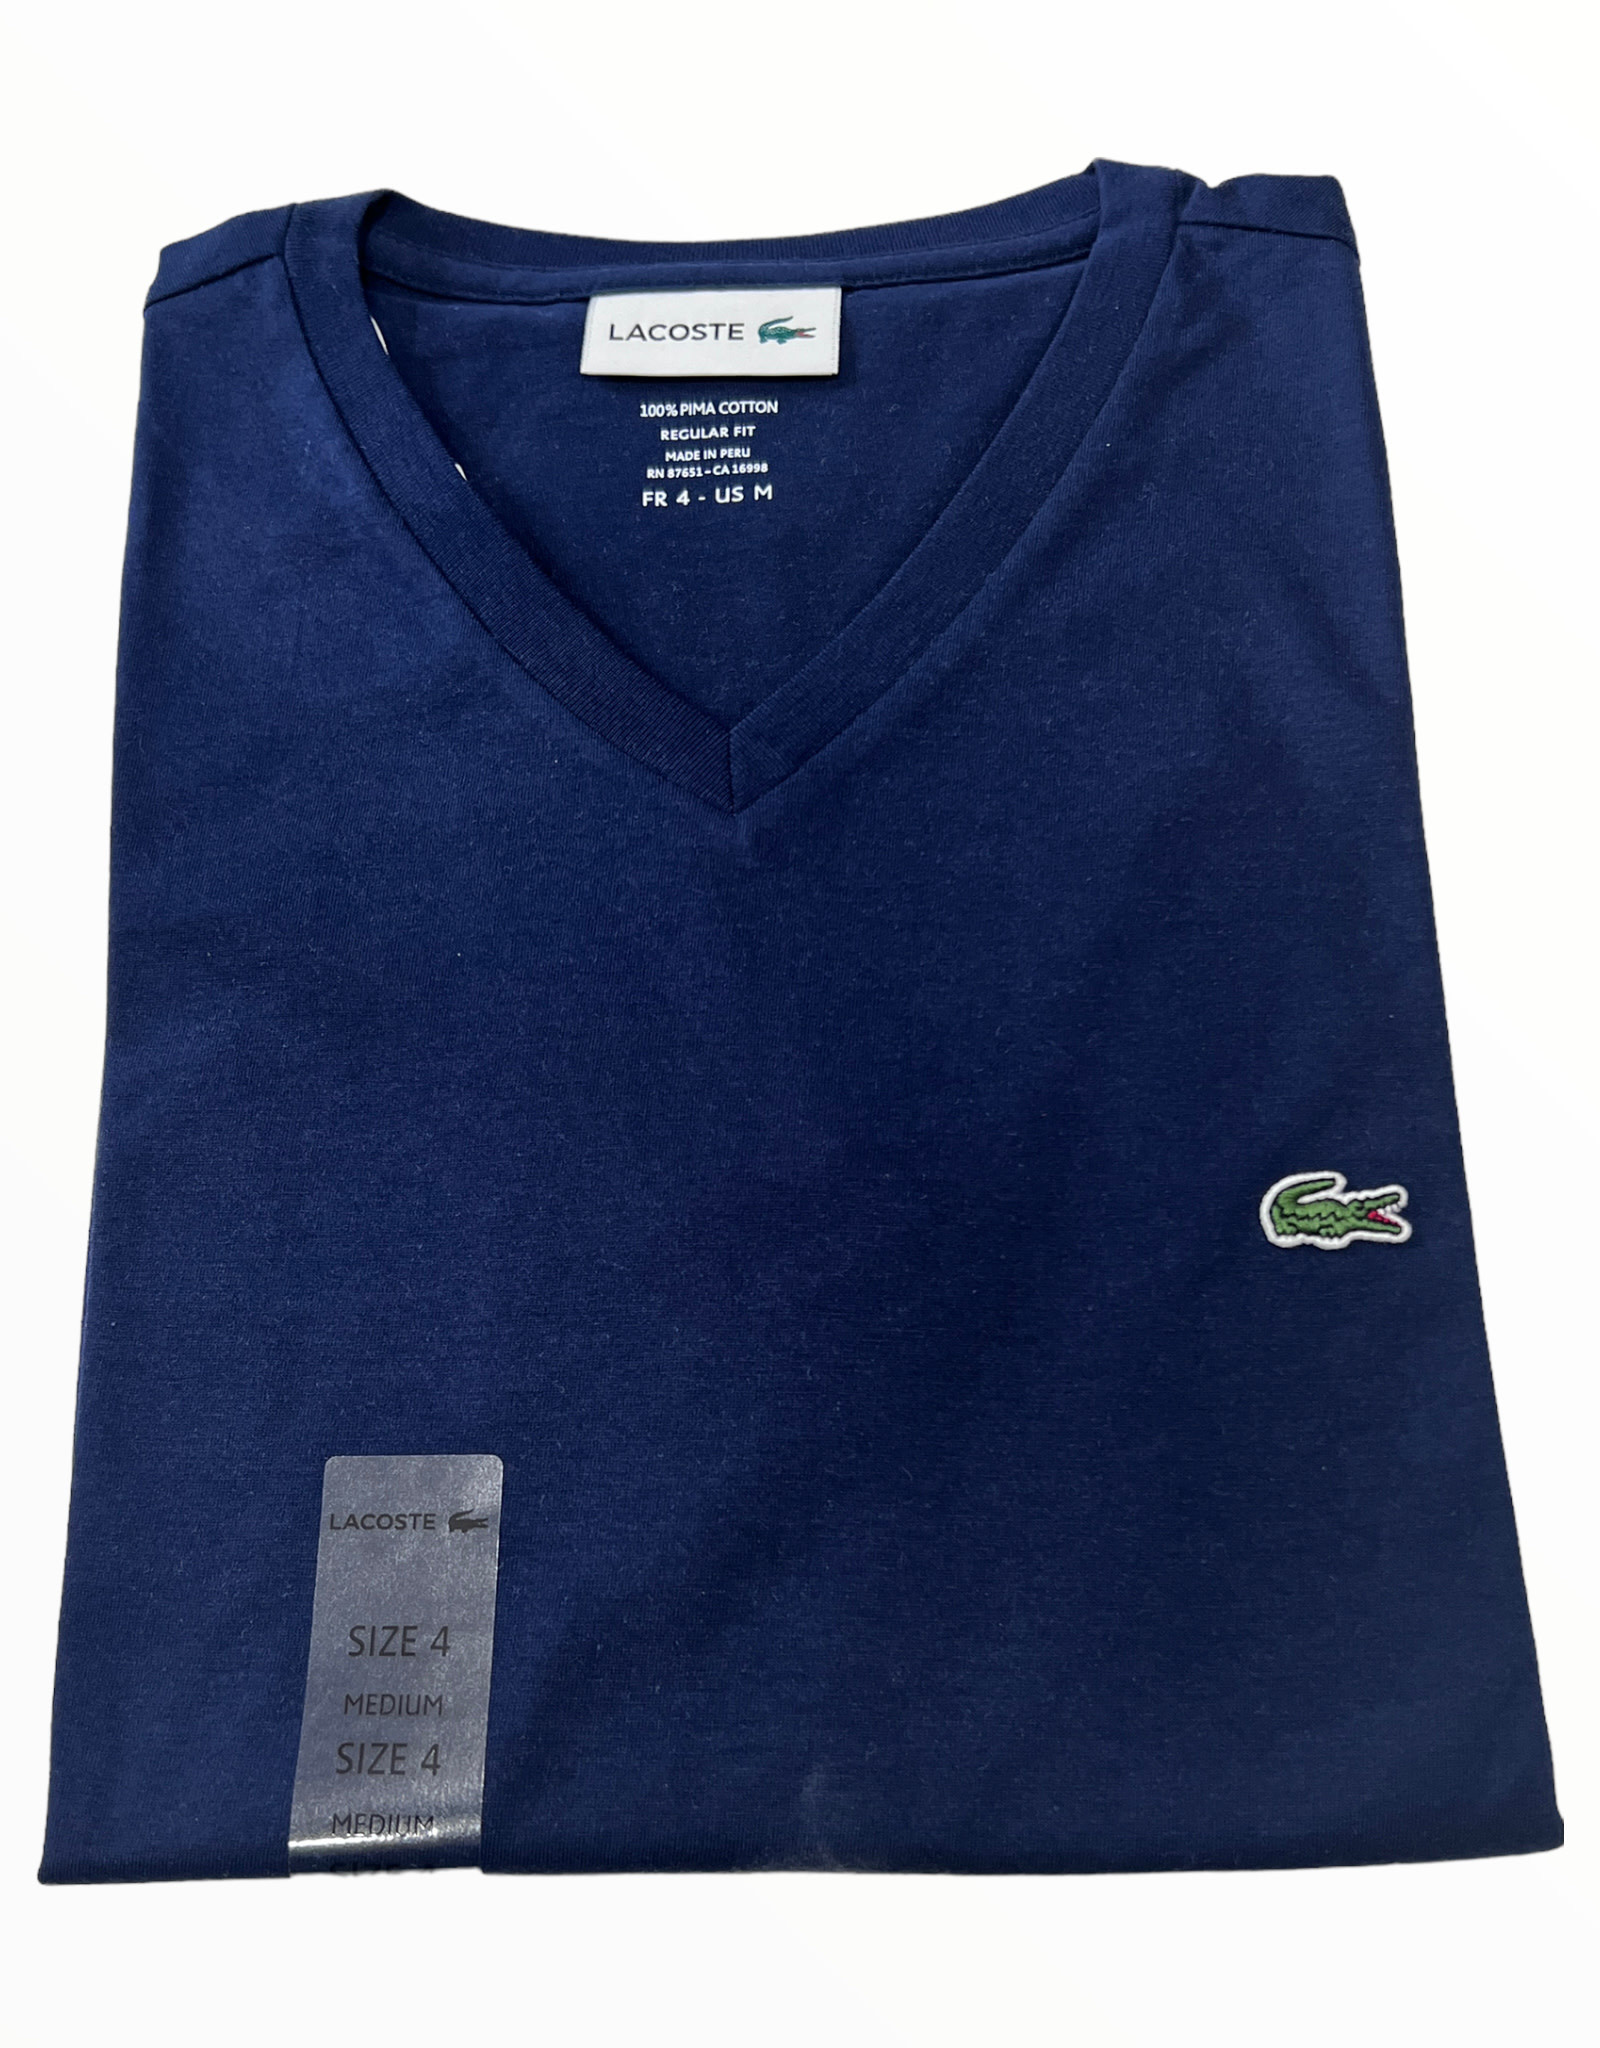 Lacoste Lacoste Men’s V-Neck Shirts Regular Fit 100% Pima Cotton